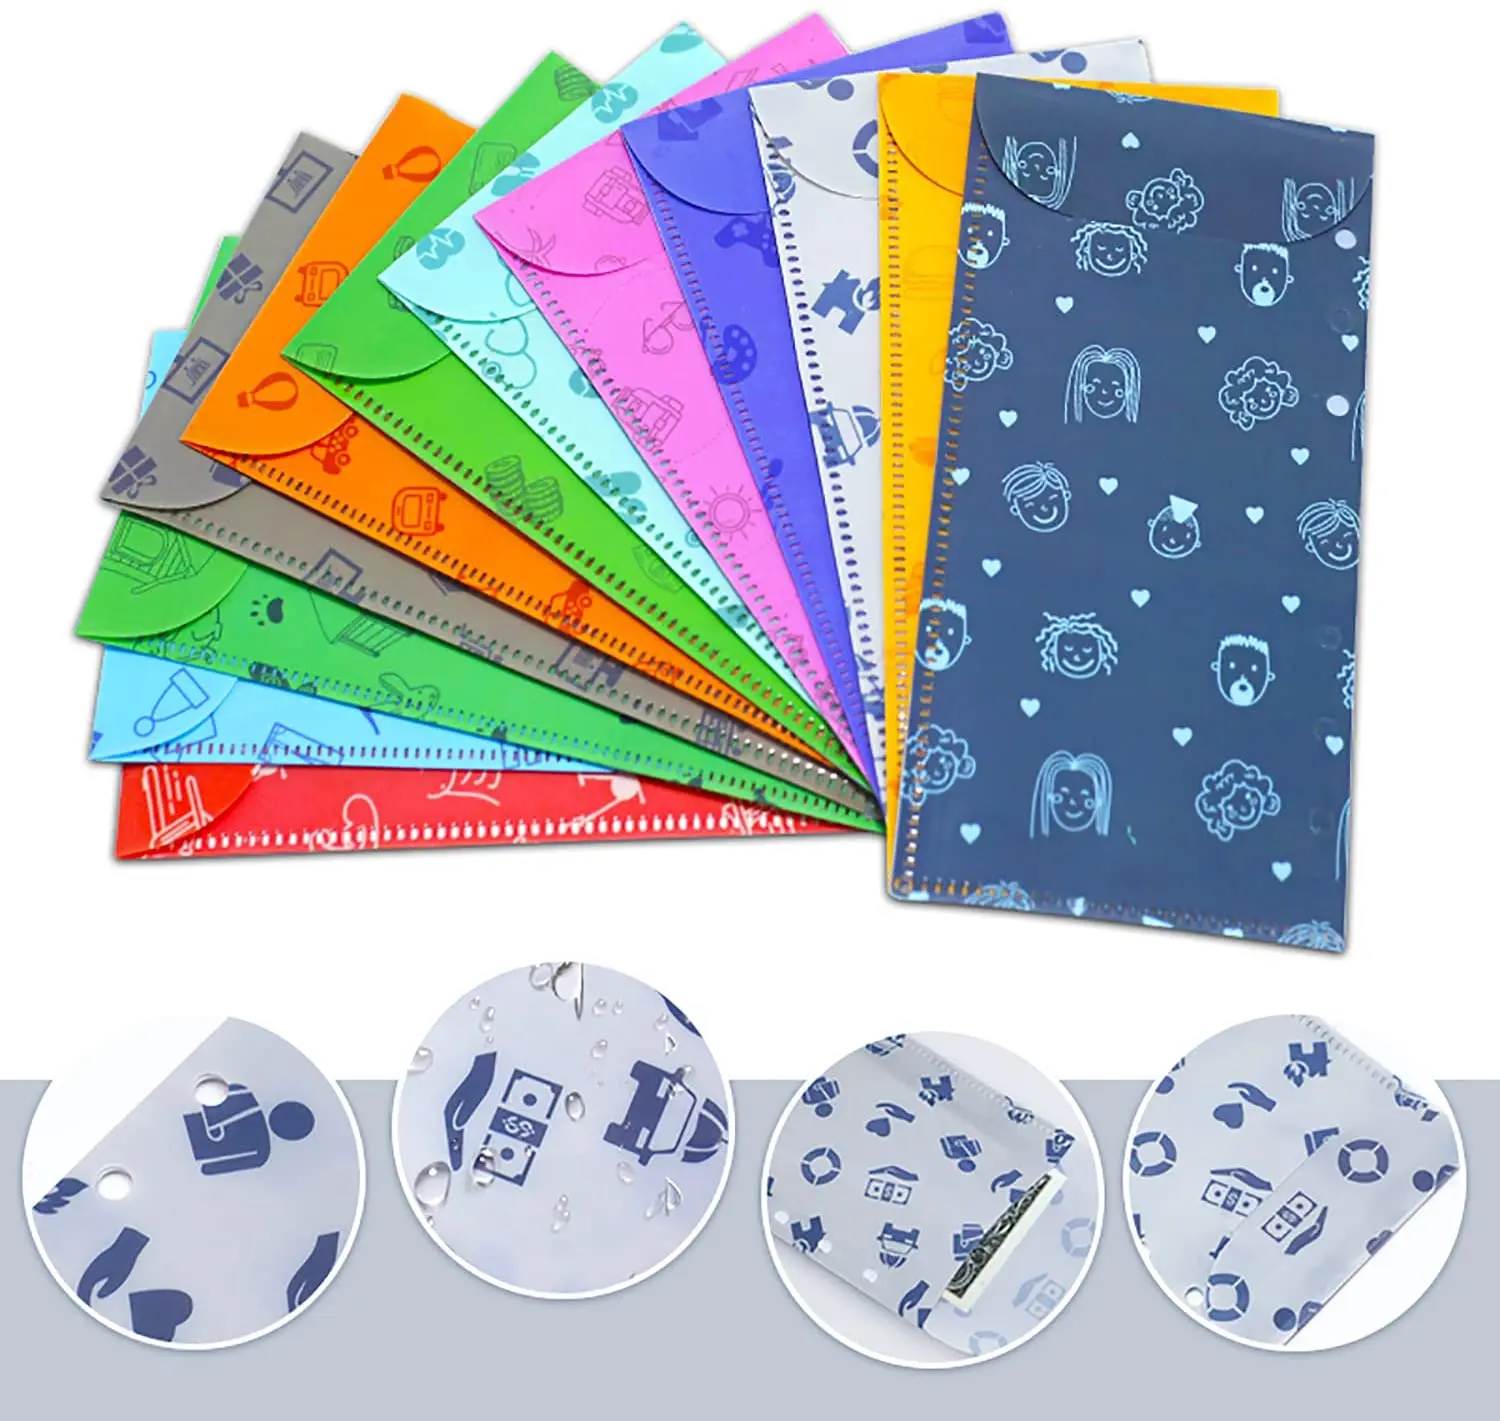 Carpeta de cuero sintético A6 de 35 piezas, sistema de sobres en efectivo para cuaderno, con bolsillos para guardar dinero, organizador de billetes con ahorro de presupuesto